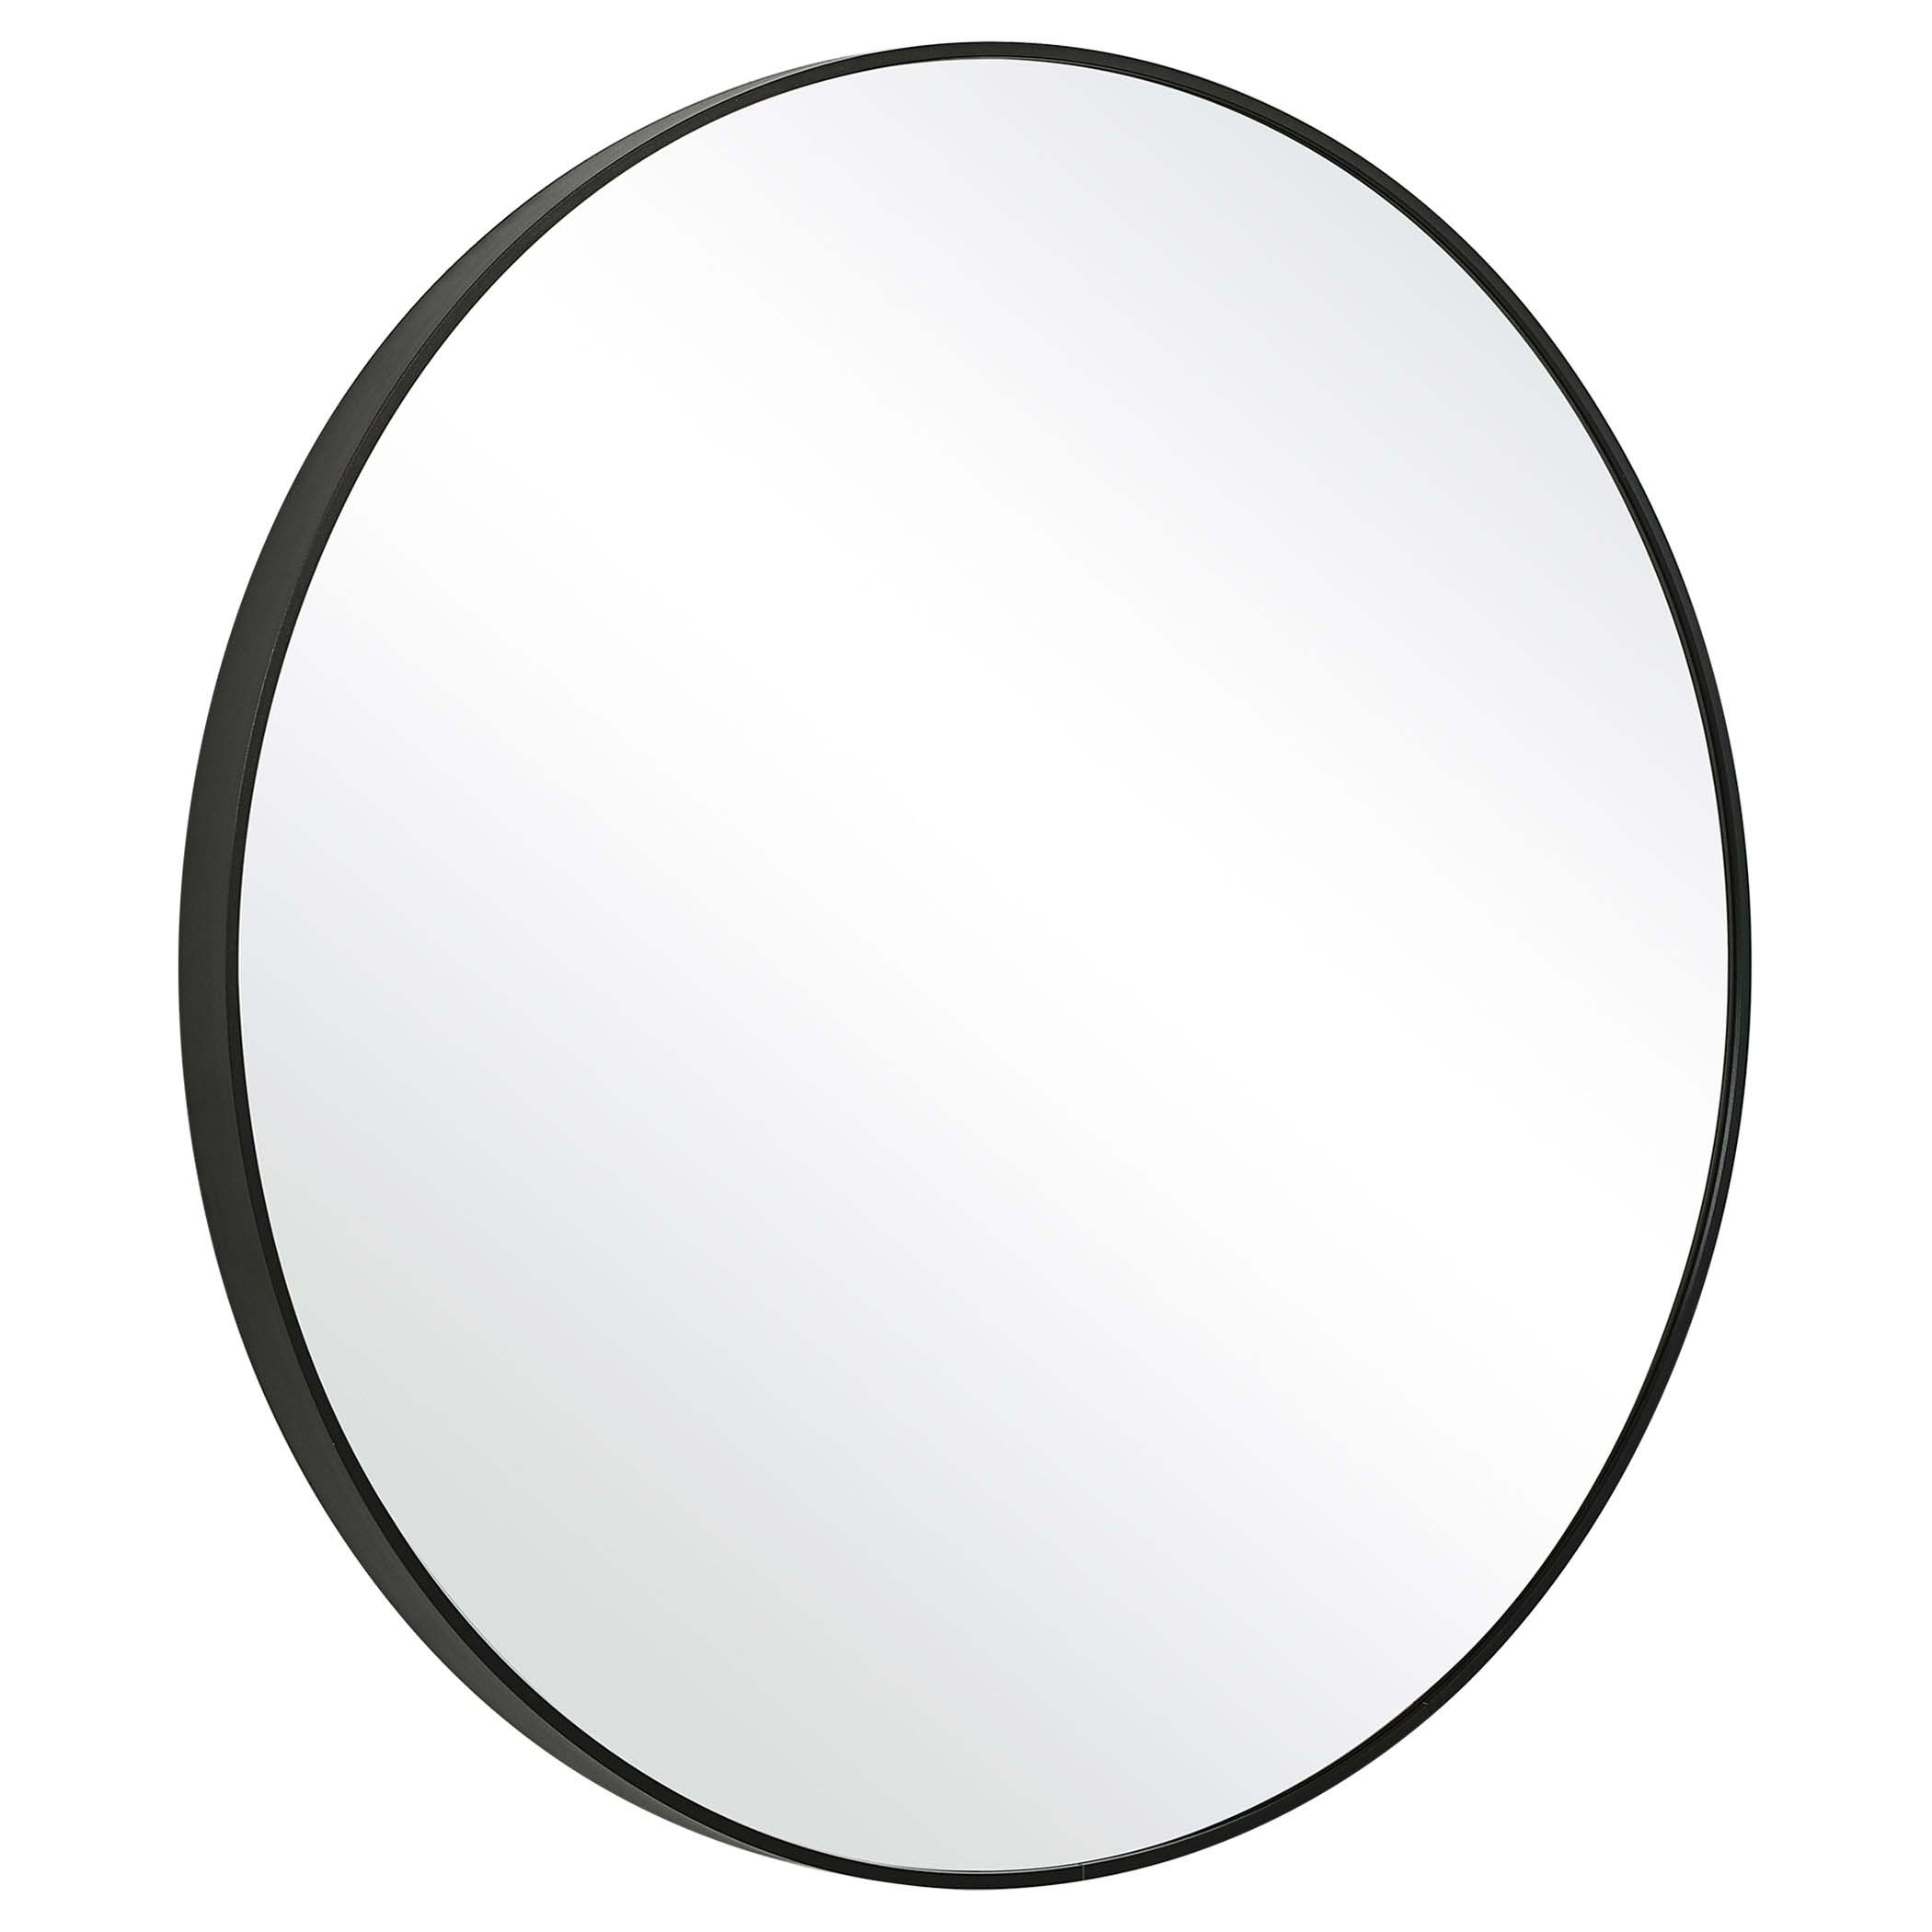 Decor Market Round Thin Frame Mirror - Black